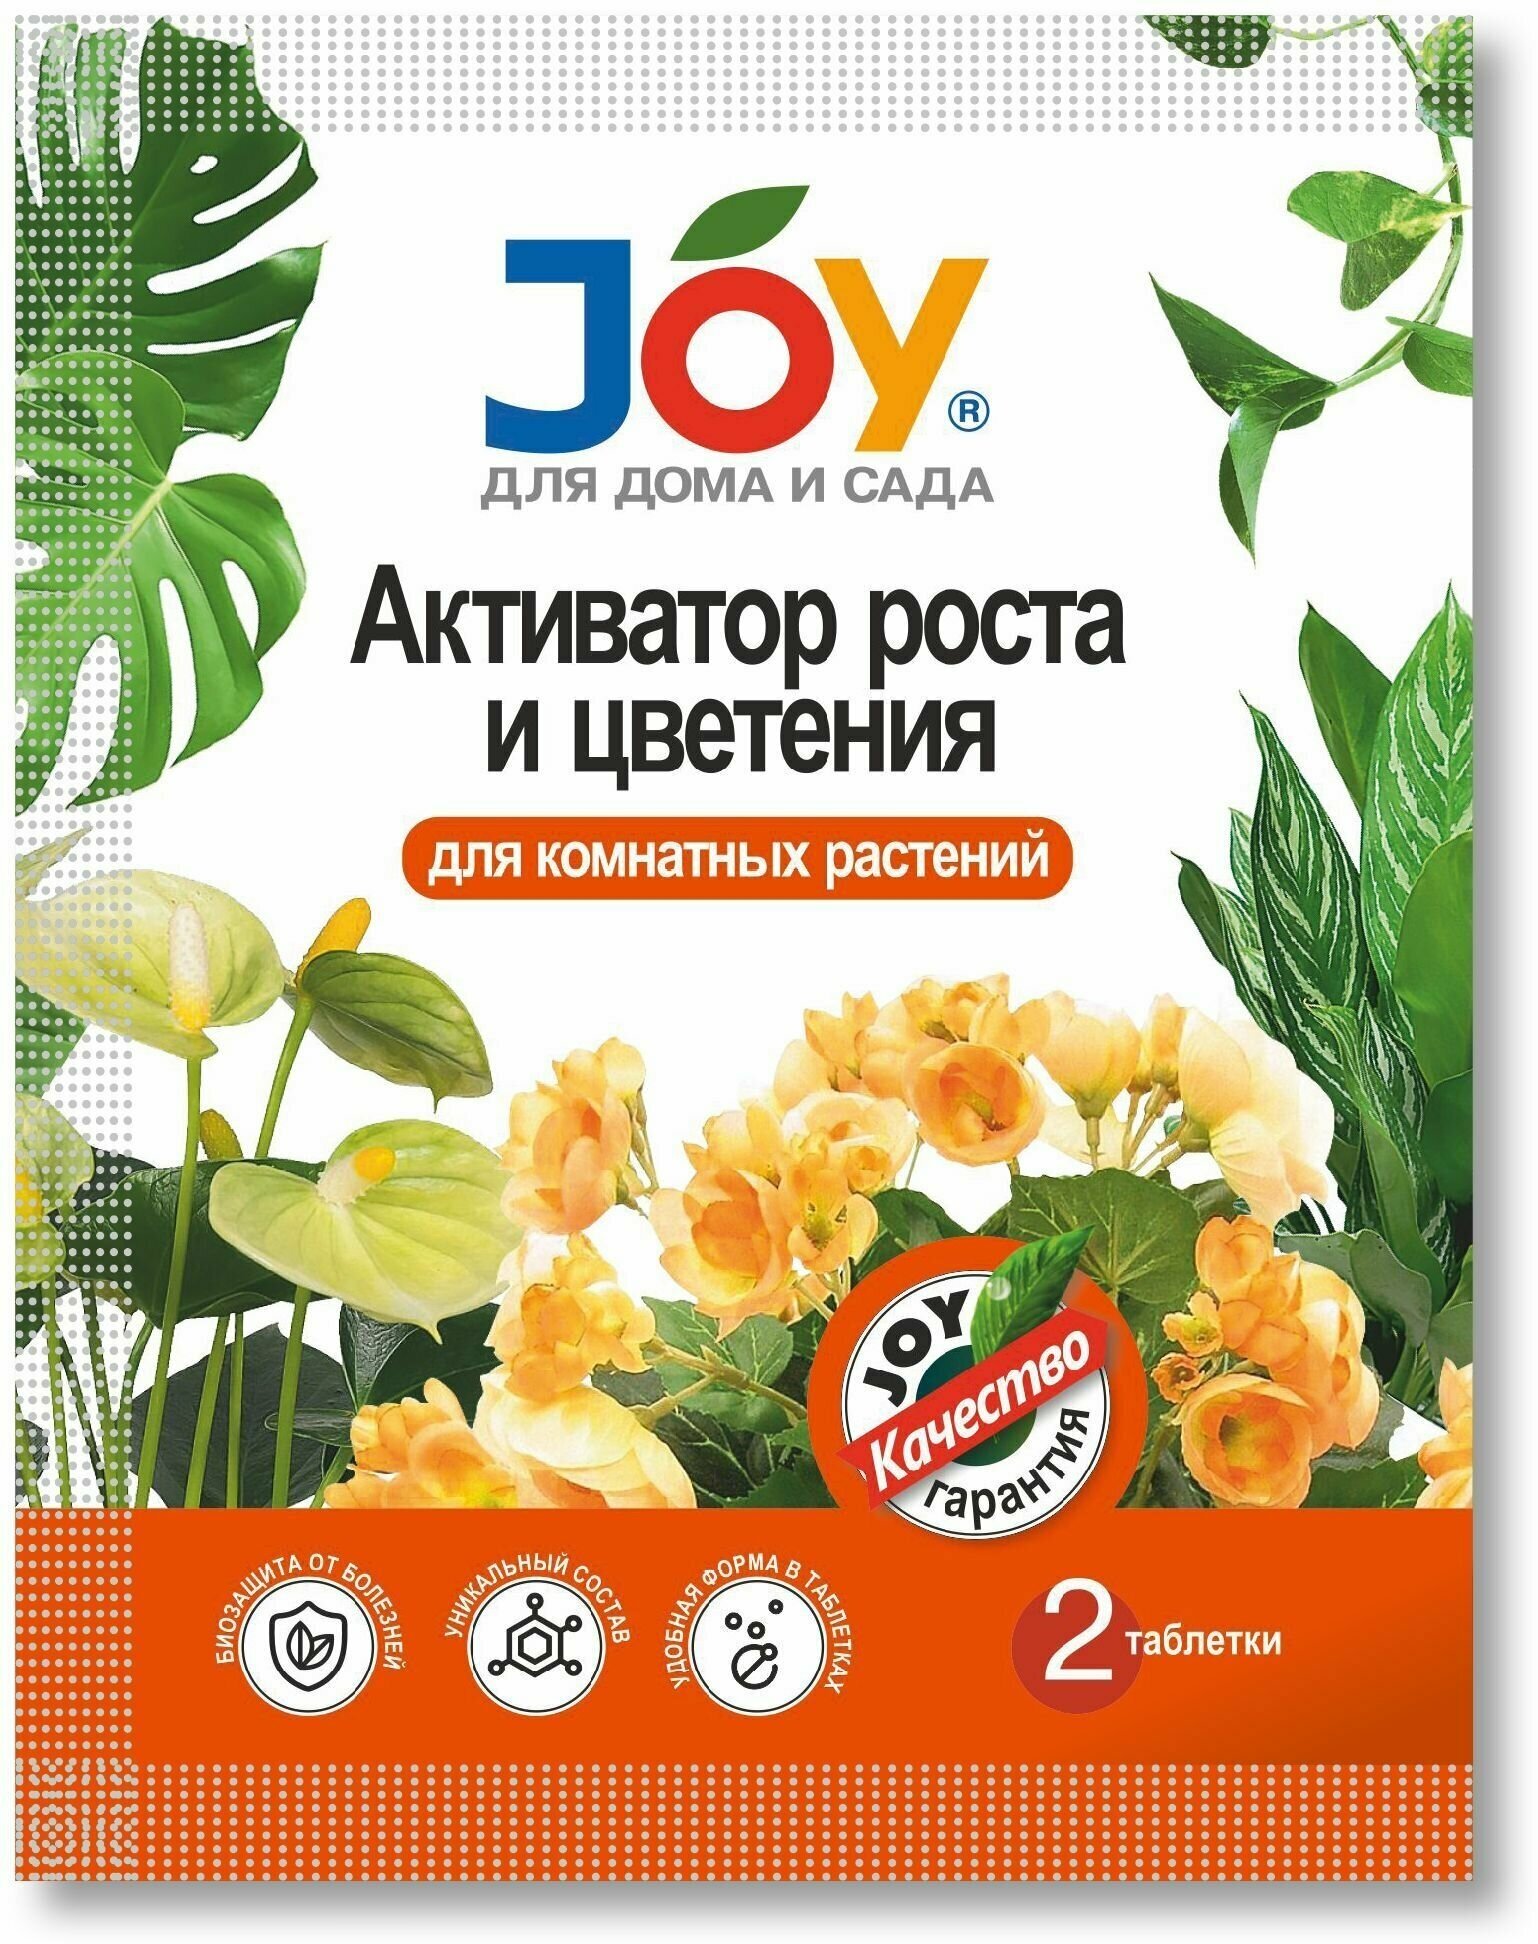 JOY Активатор для роста и цветения комнатных растений.